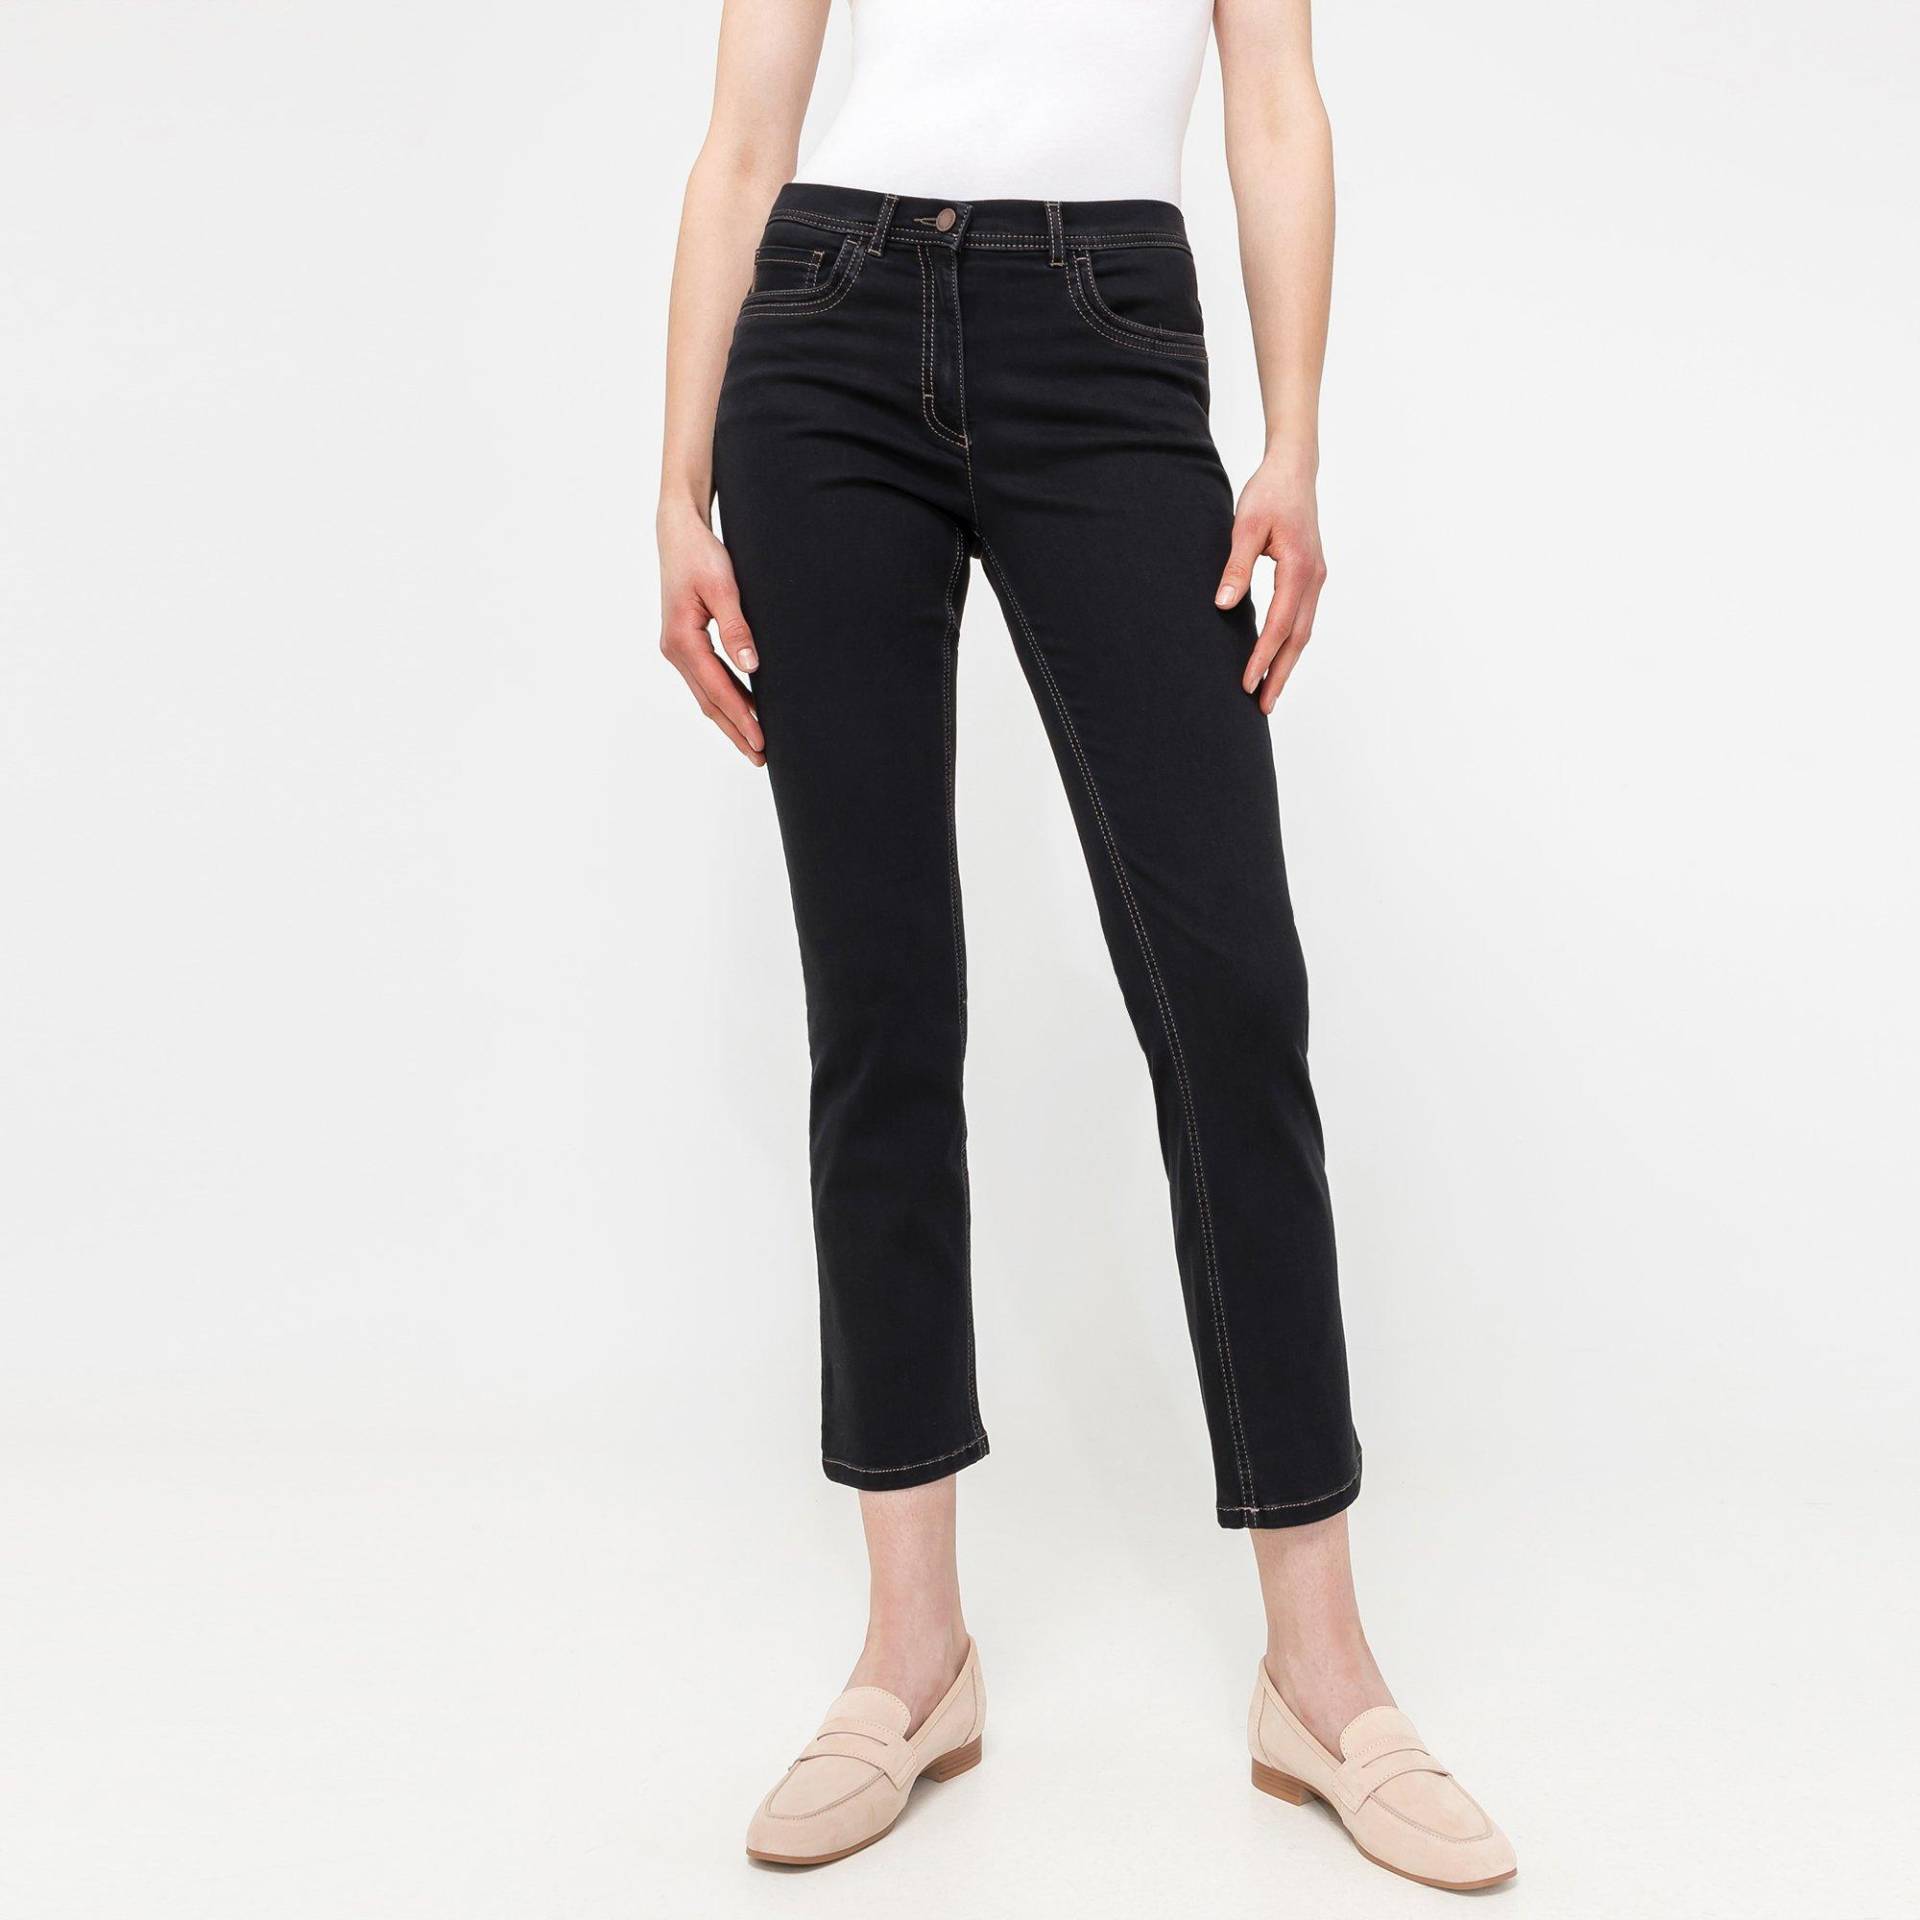 Jeans, Straight Leg Fit Damen Black L30/W42 von ZERRES